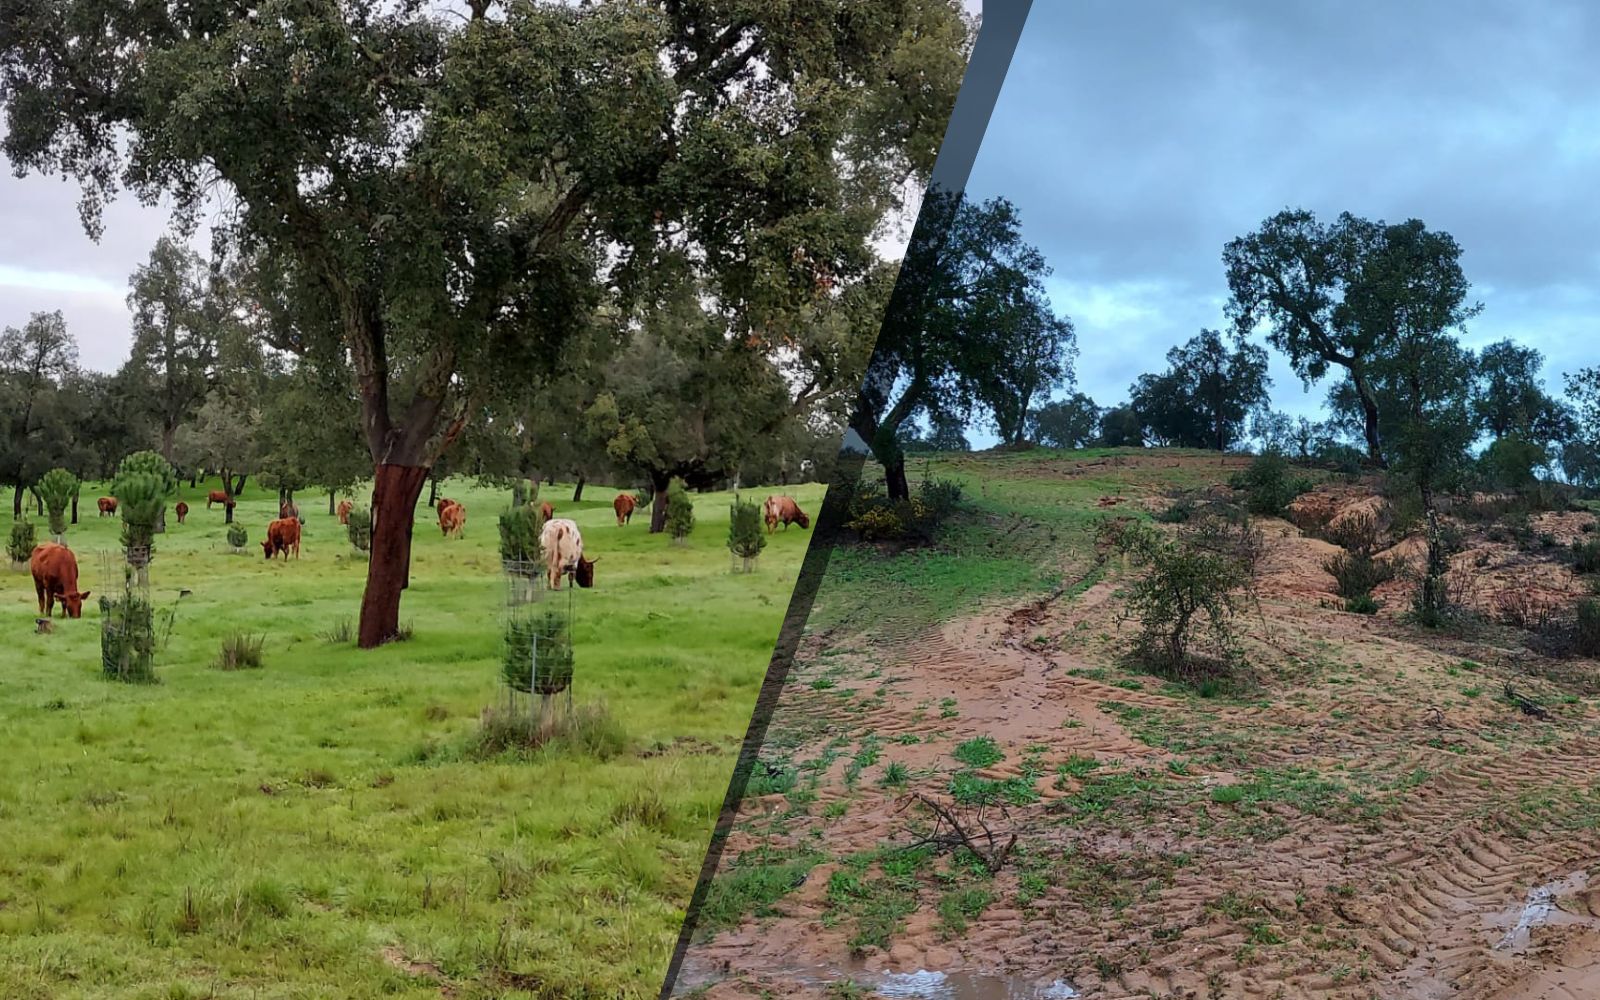 A importância do solo na sustentabilidade do Montado. Comparação entre a Herdade da Abegoaria e uma herdade vizinha.